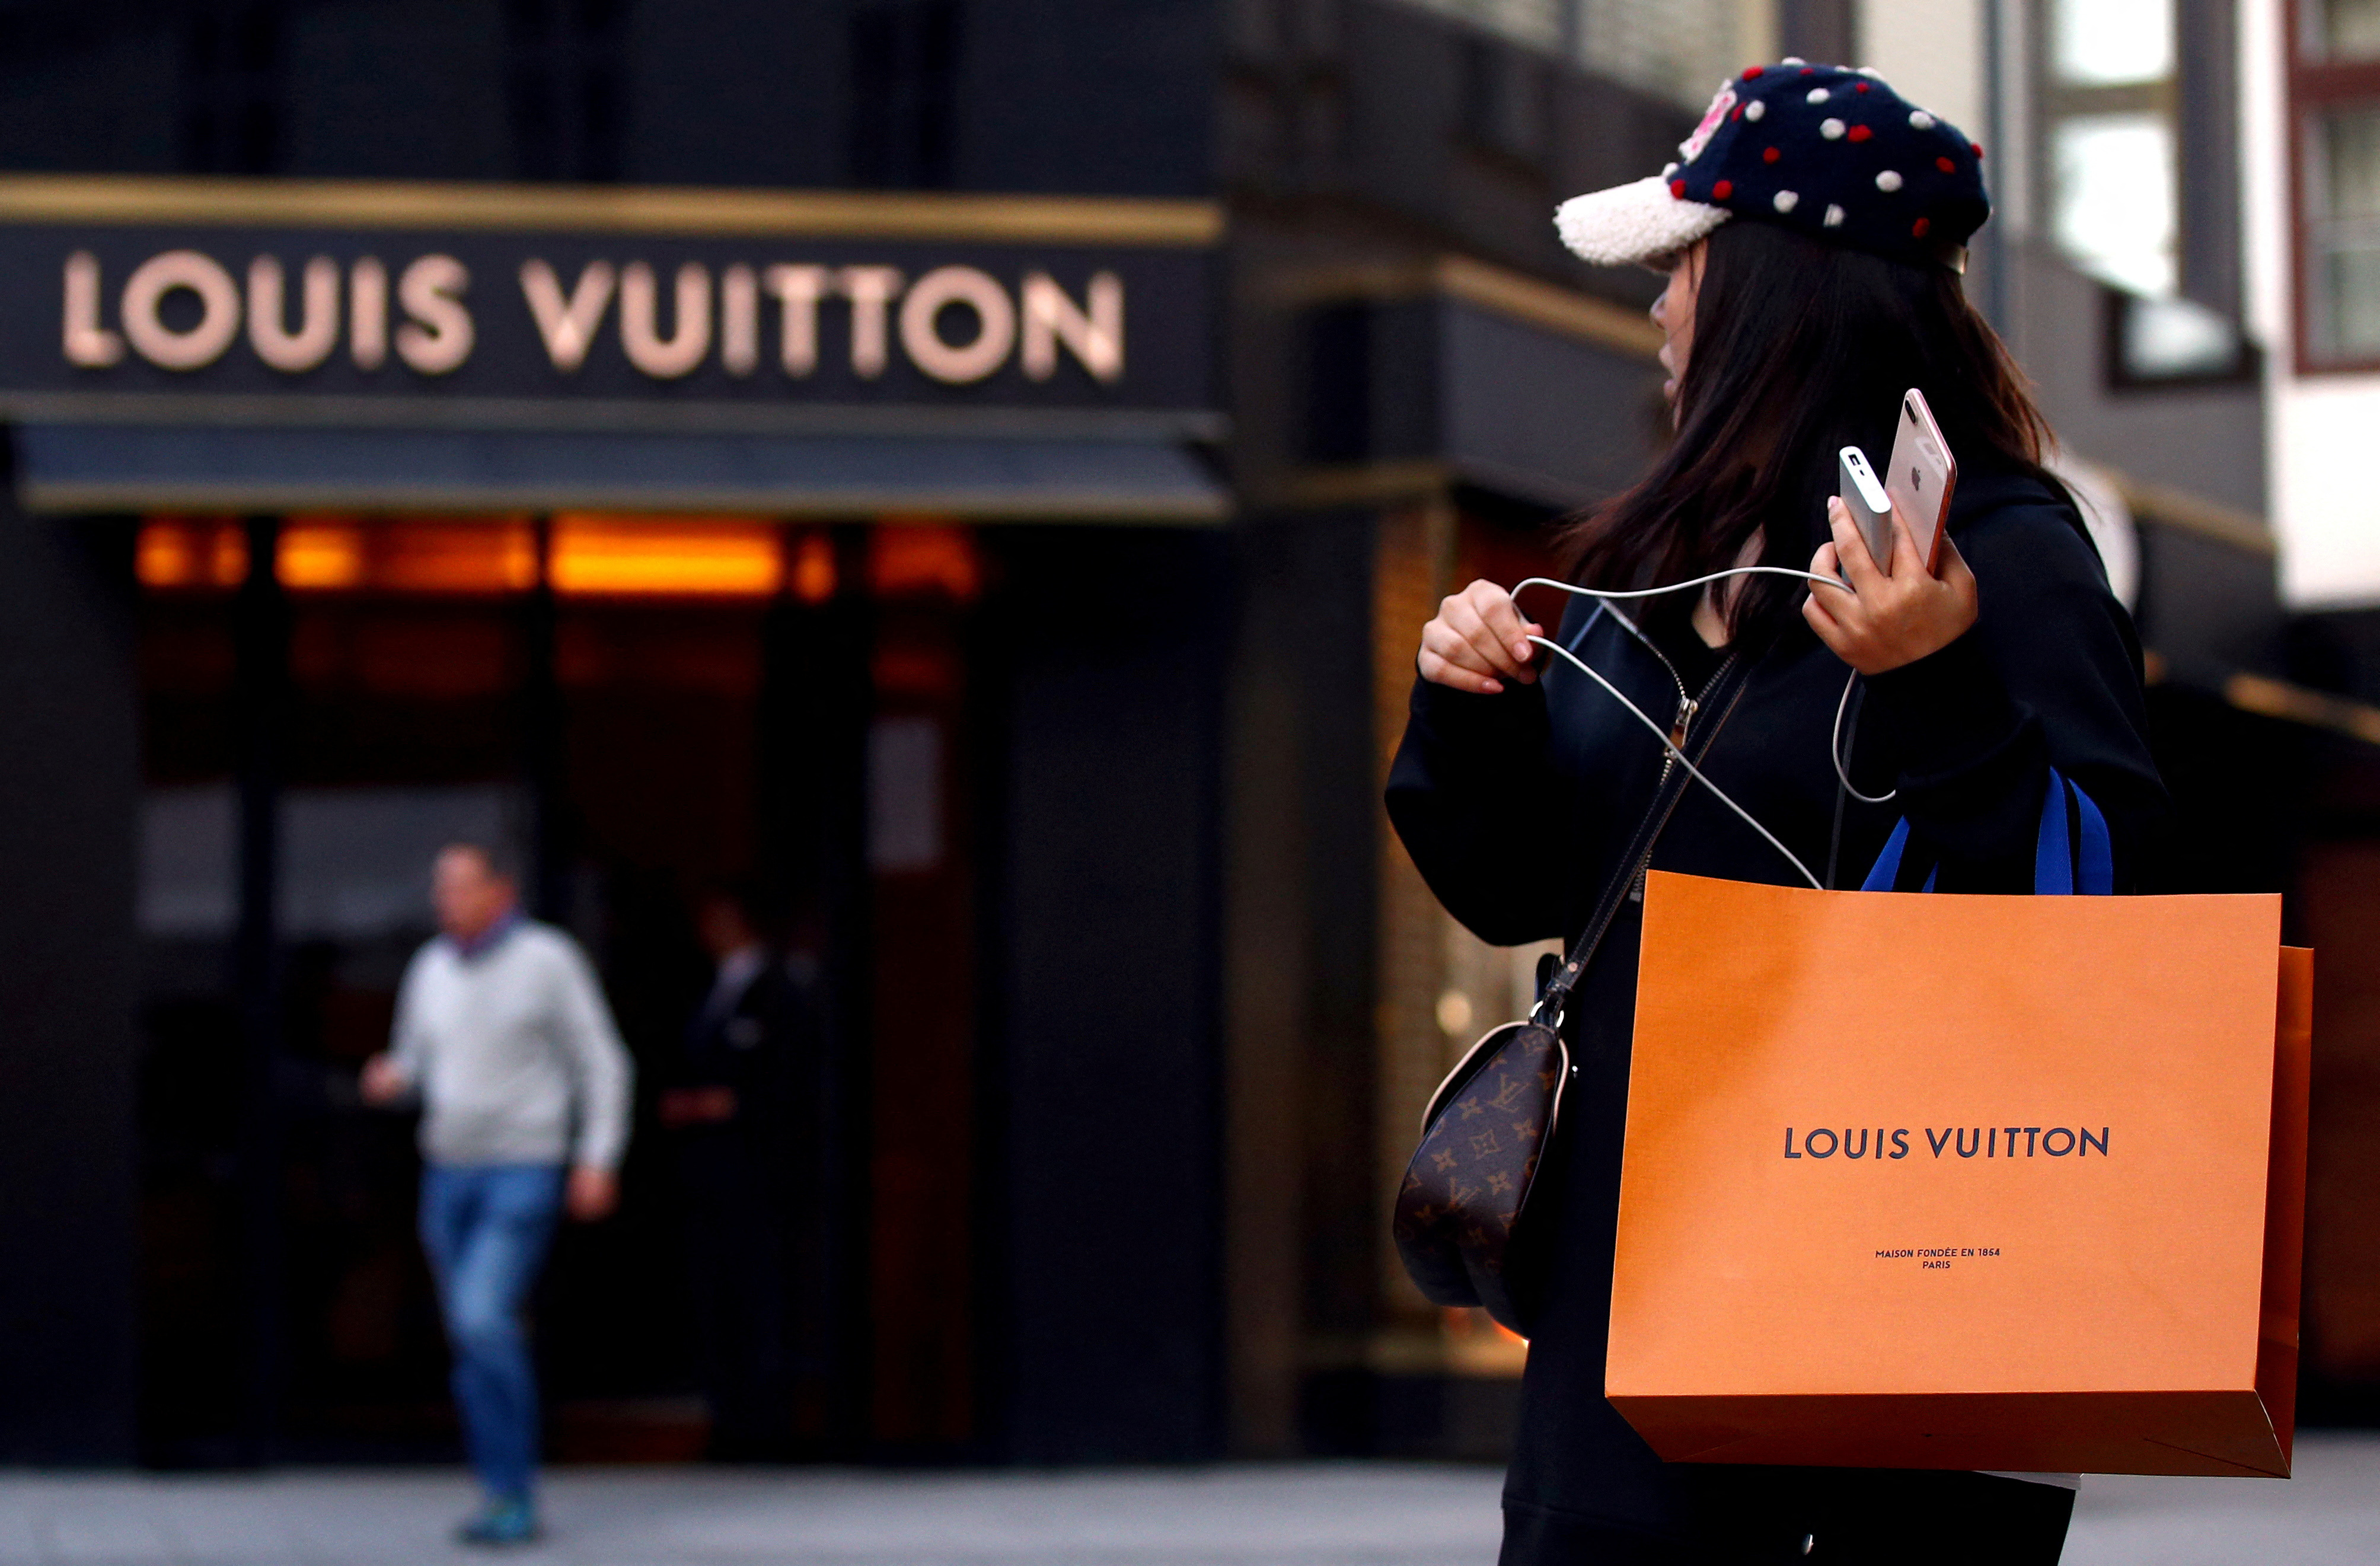 Lista completa de precios de las bolsas de Louis Vuitton (EE. UU